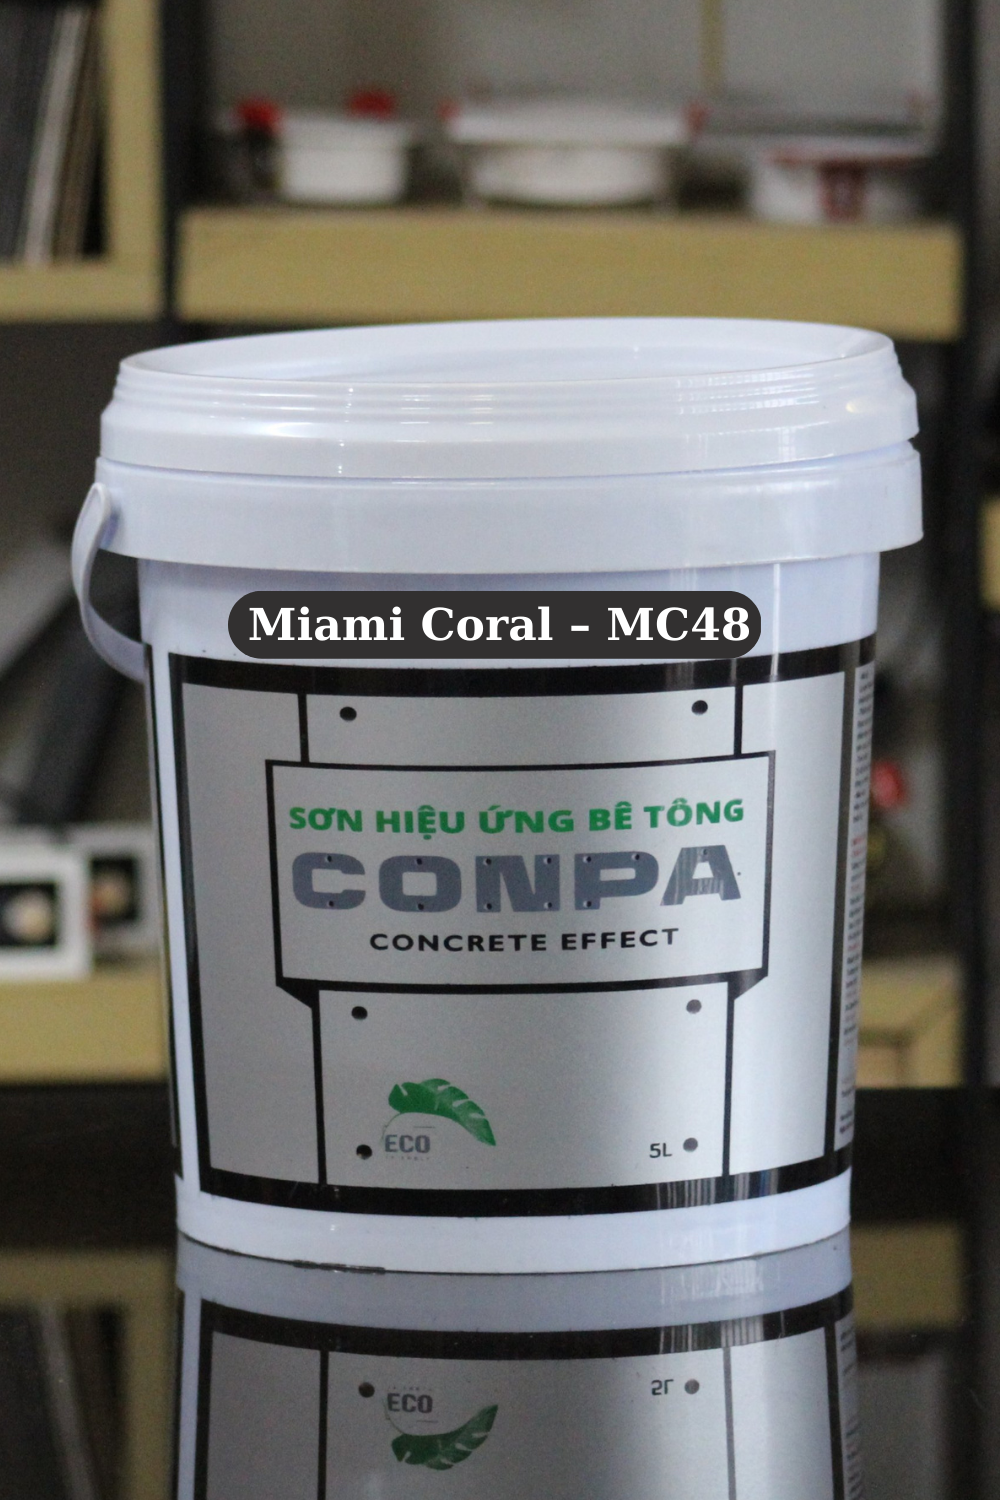 SƠN HIỆU ỨNG BÊ TÔNG MÃ MÀU: Miami Coral – MC48